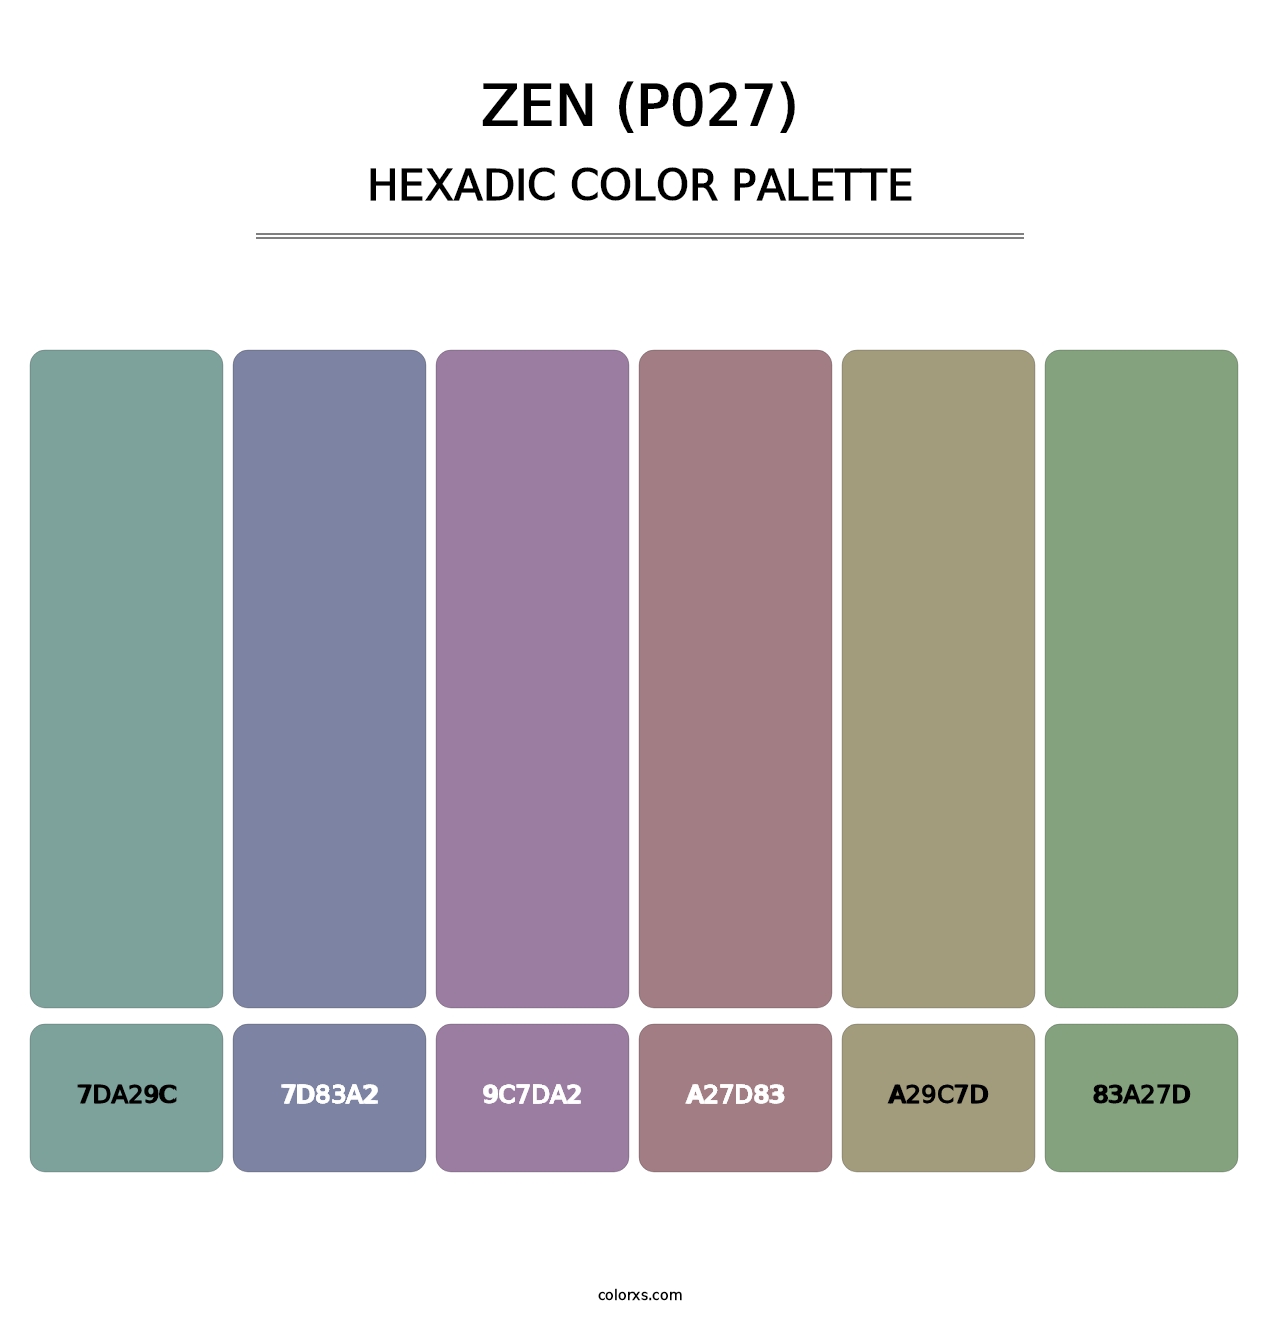 Zen (P027) - Hexadic Color Palette